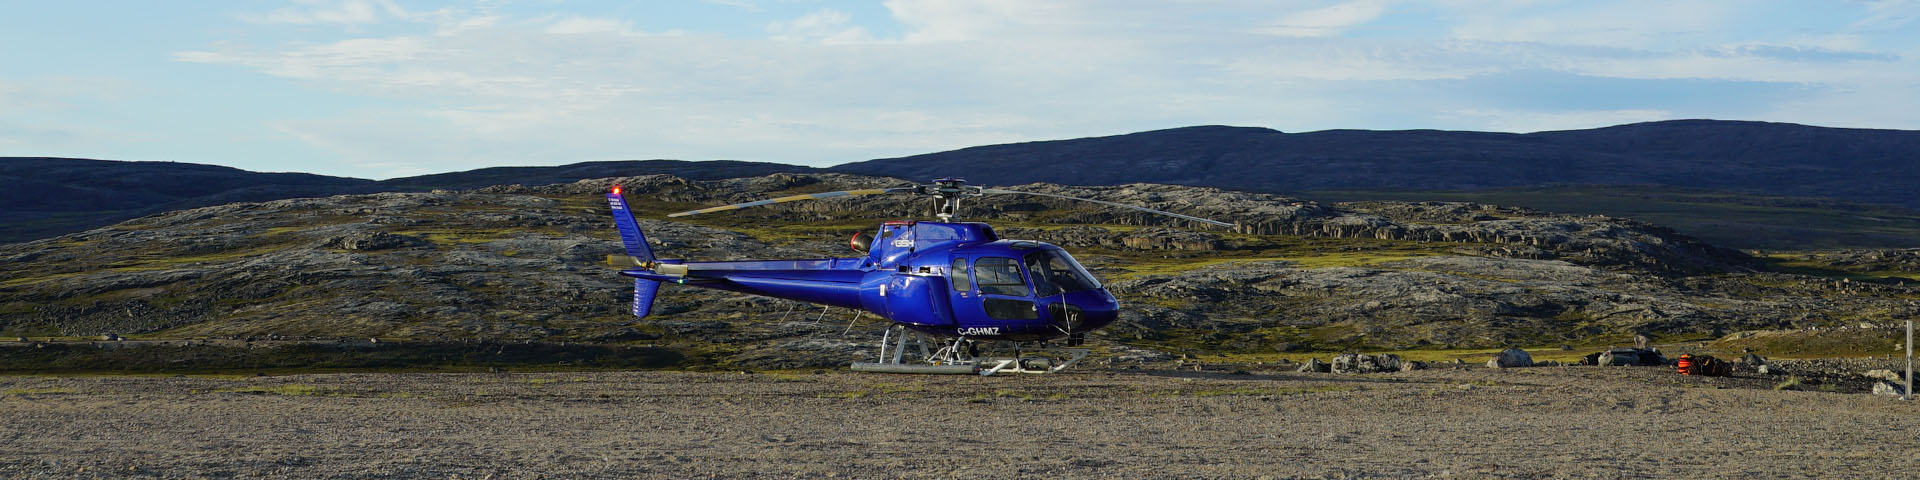 Un hélicoptère bleu sur une piste d'atterrissage en terre battue, entouré d'un paysage de toundra. 